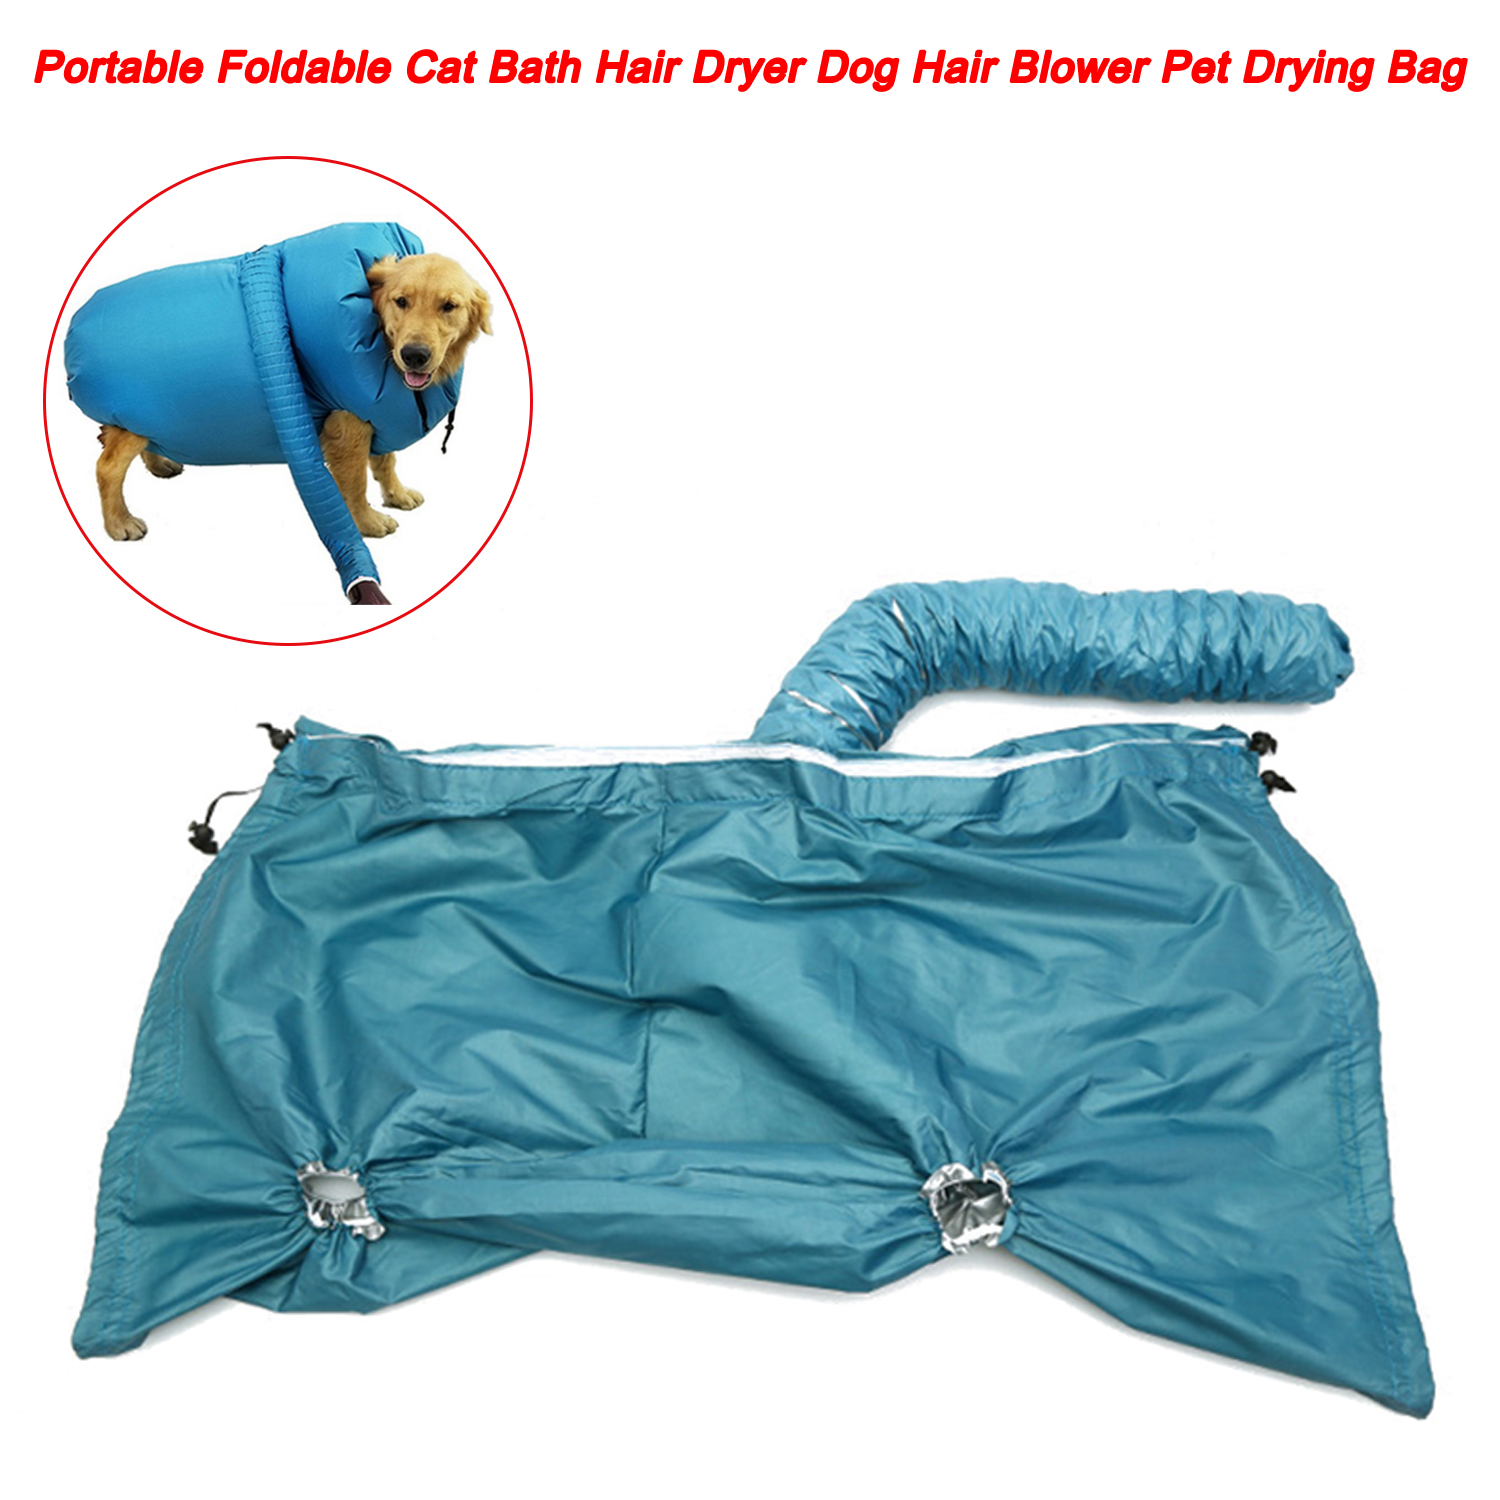 Secador de pelo plegable portátil para baño de gatos, soplador de pelo para perros, bolsa de secado para mascotas